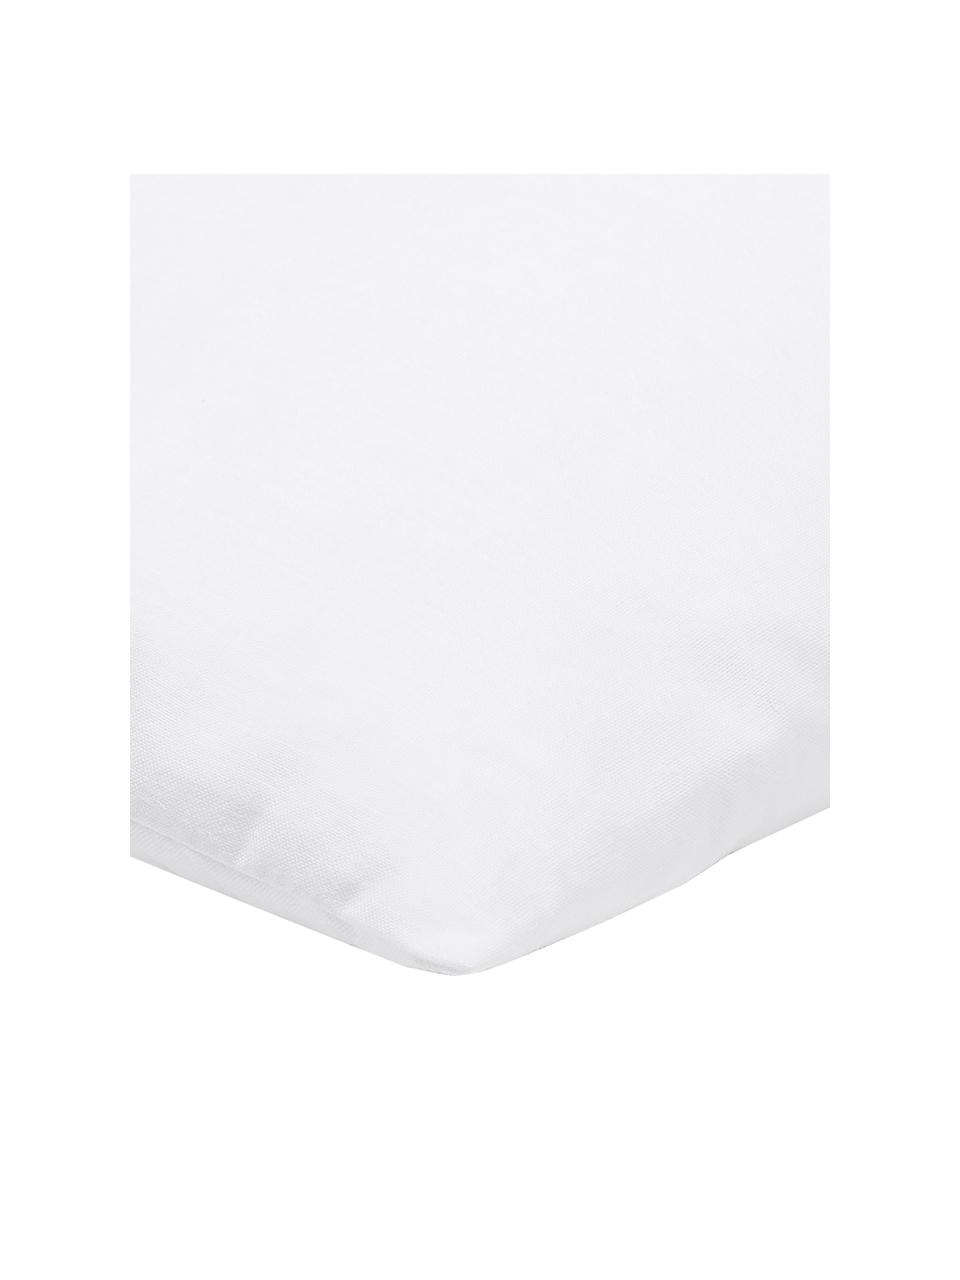 Kissen-Inlett Sia, 30x50, Microfaser-Füllung, Hülle: 100% Baumwolle, Weiß, B 30 x L 50 cm